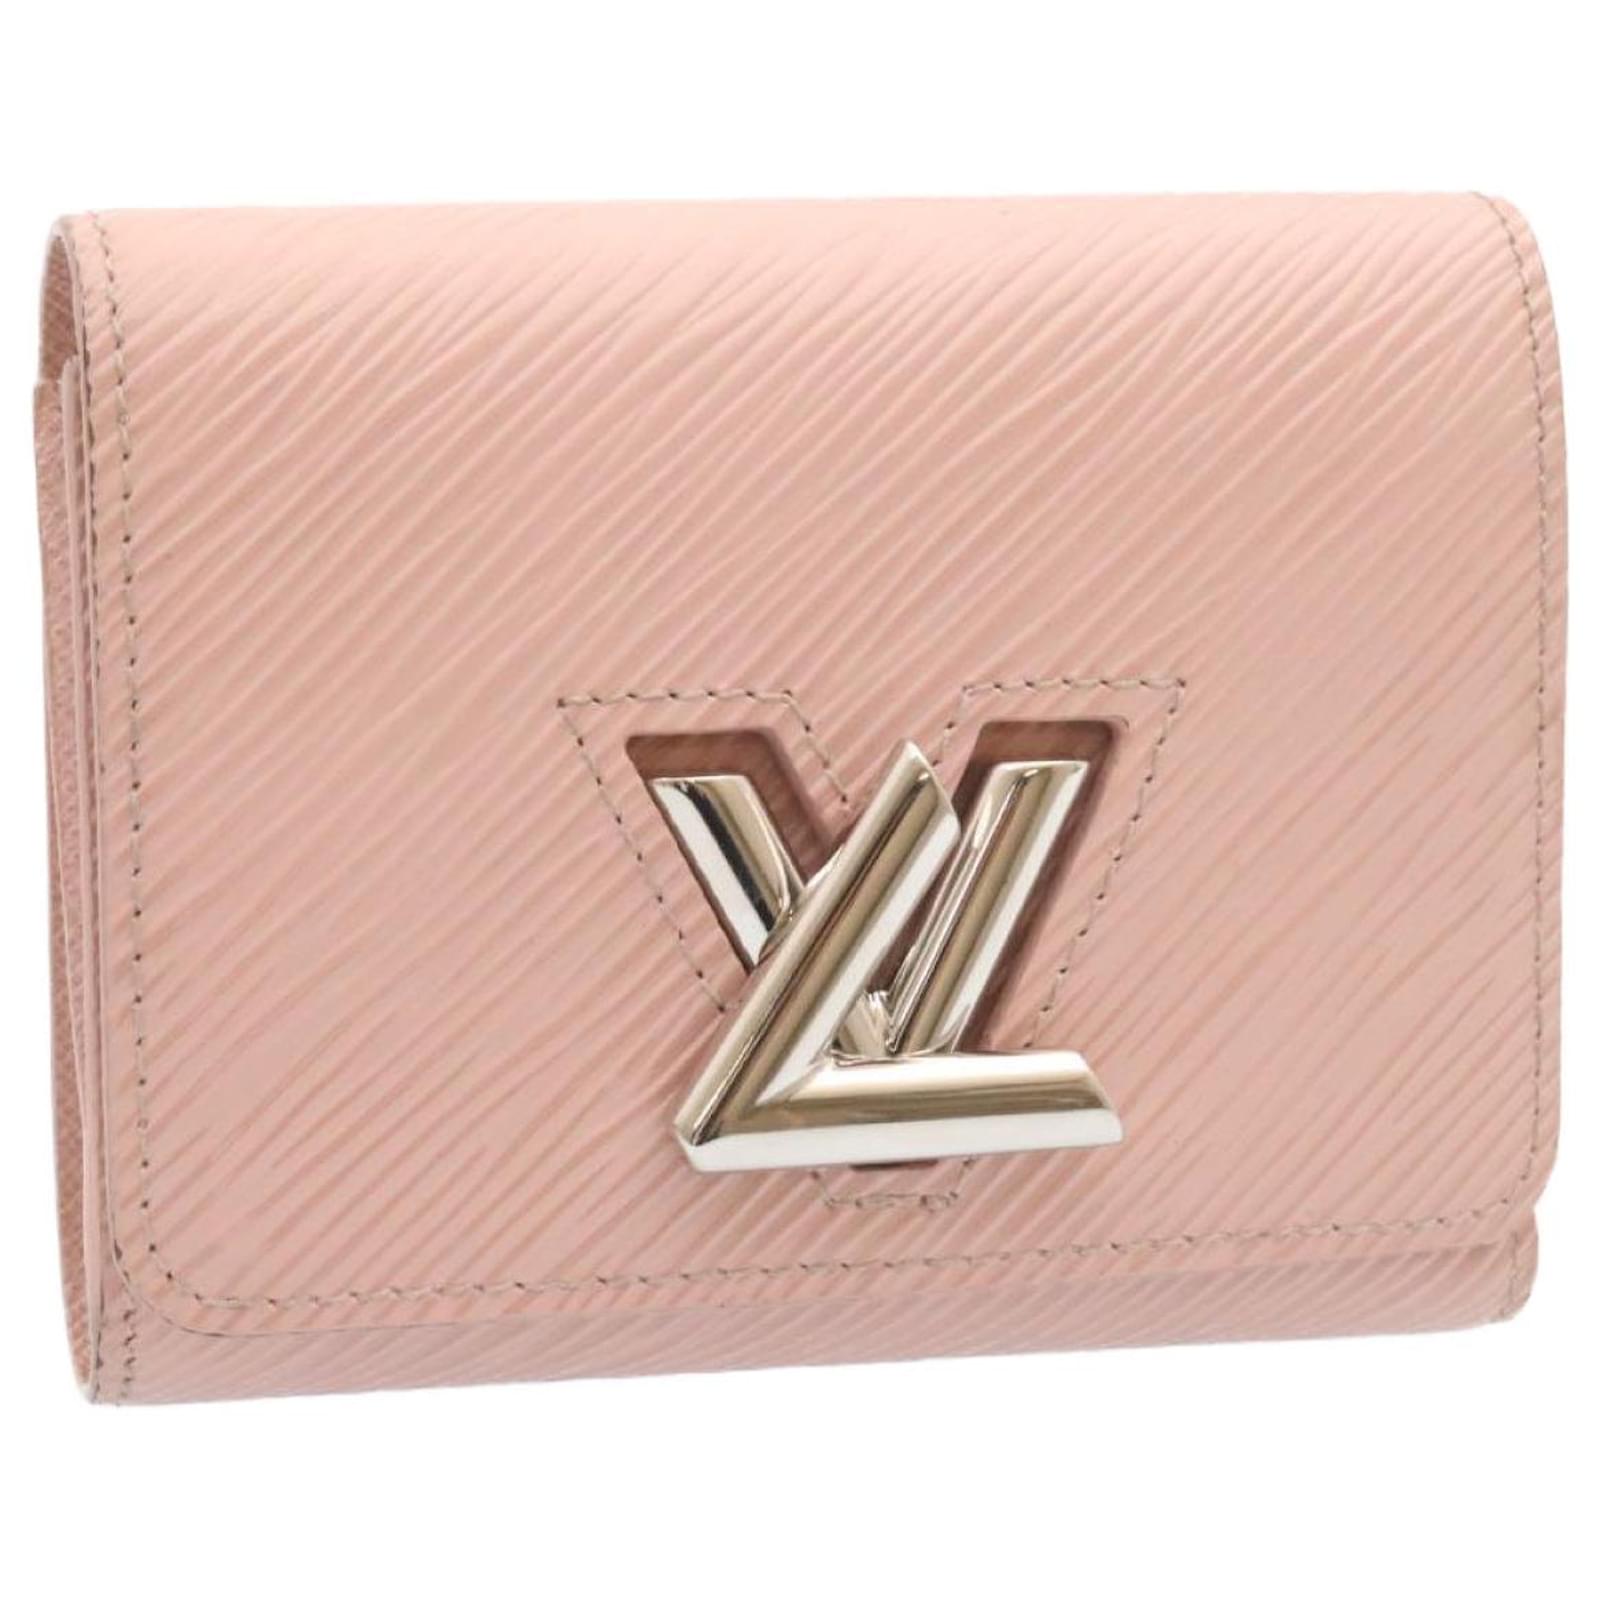 LOUIS VUITTON Epi Portefeuille Twist Compact Wallet Pink M62934 LV